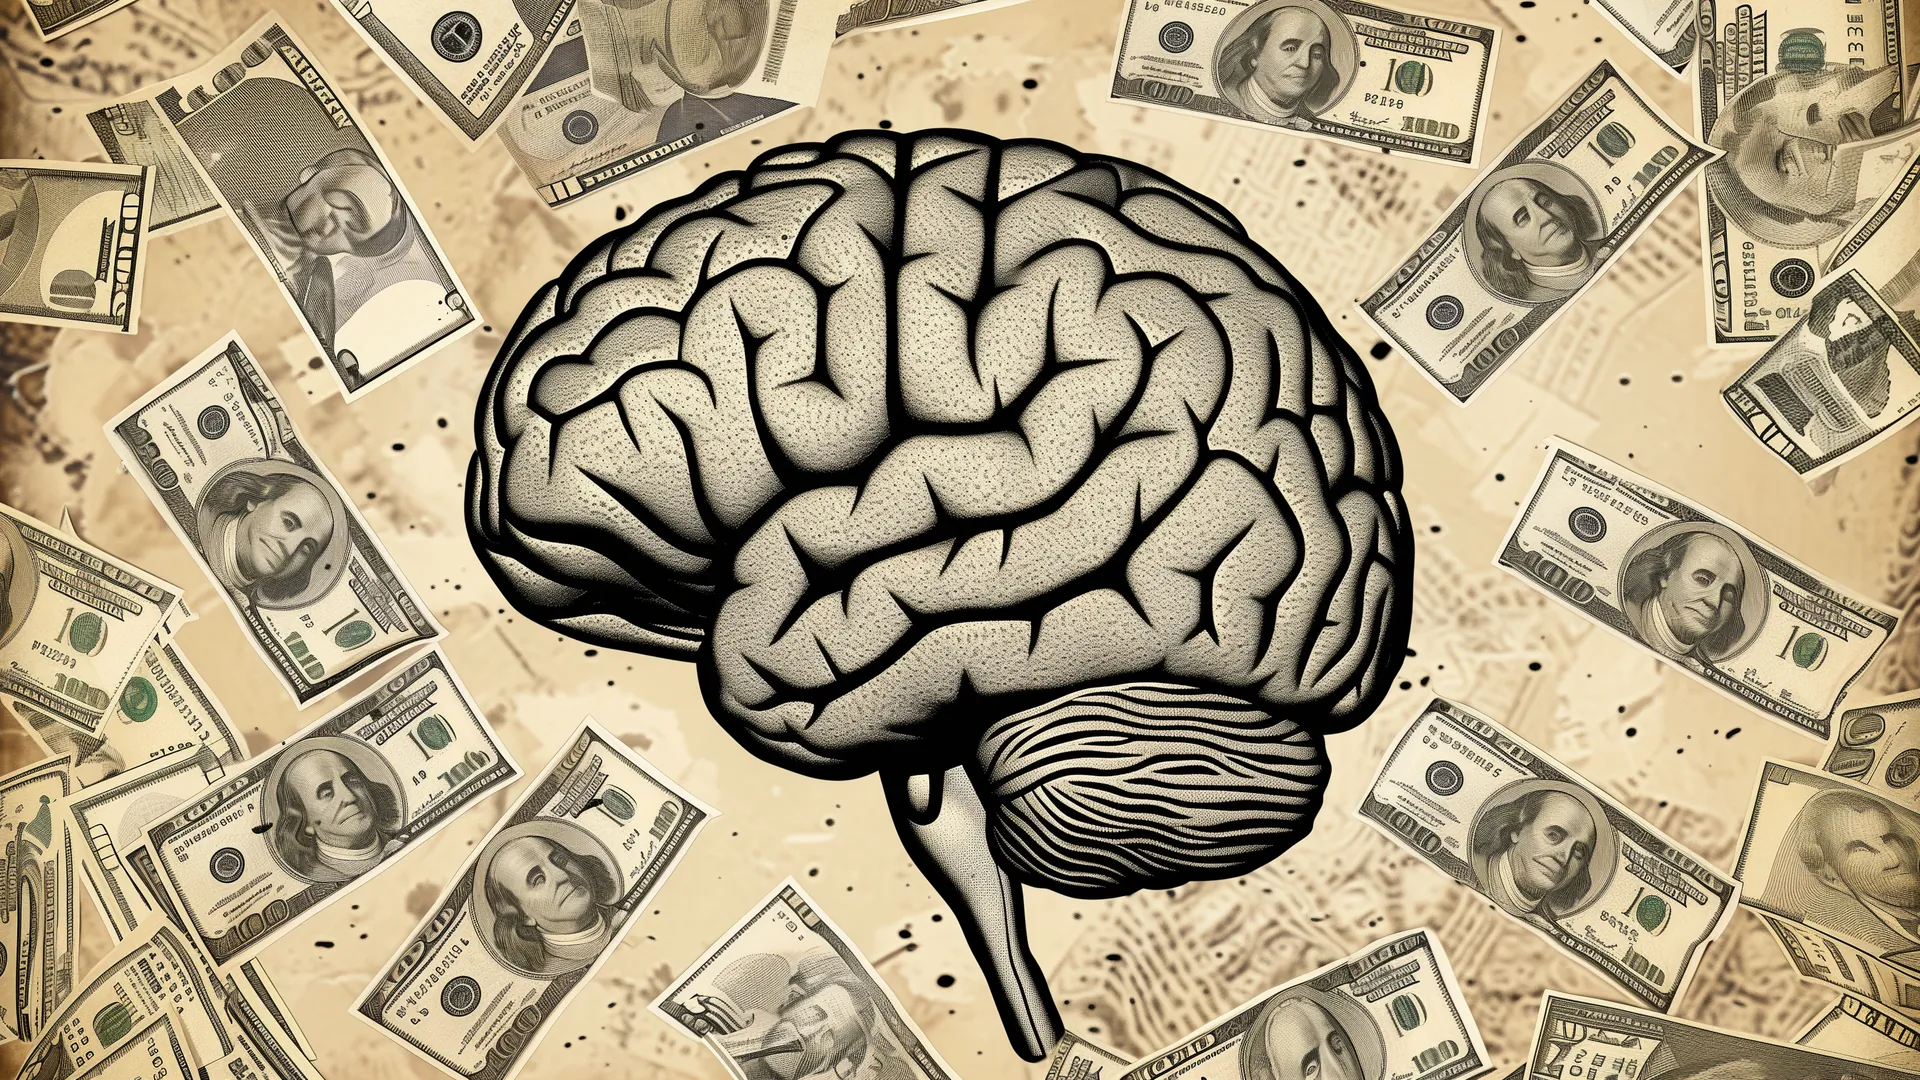 Психология денег: как поведенческие предубеждения влияют на финансовые решения